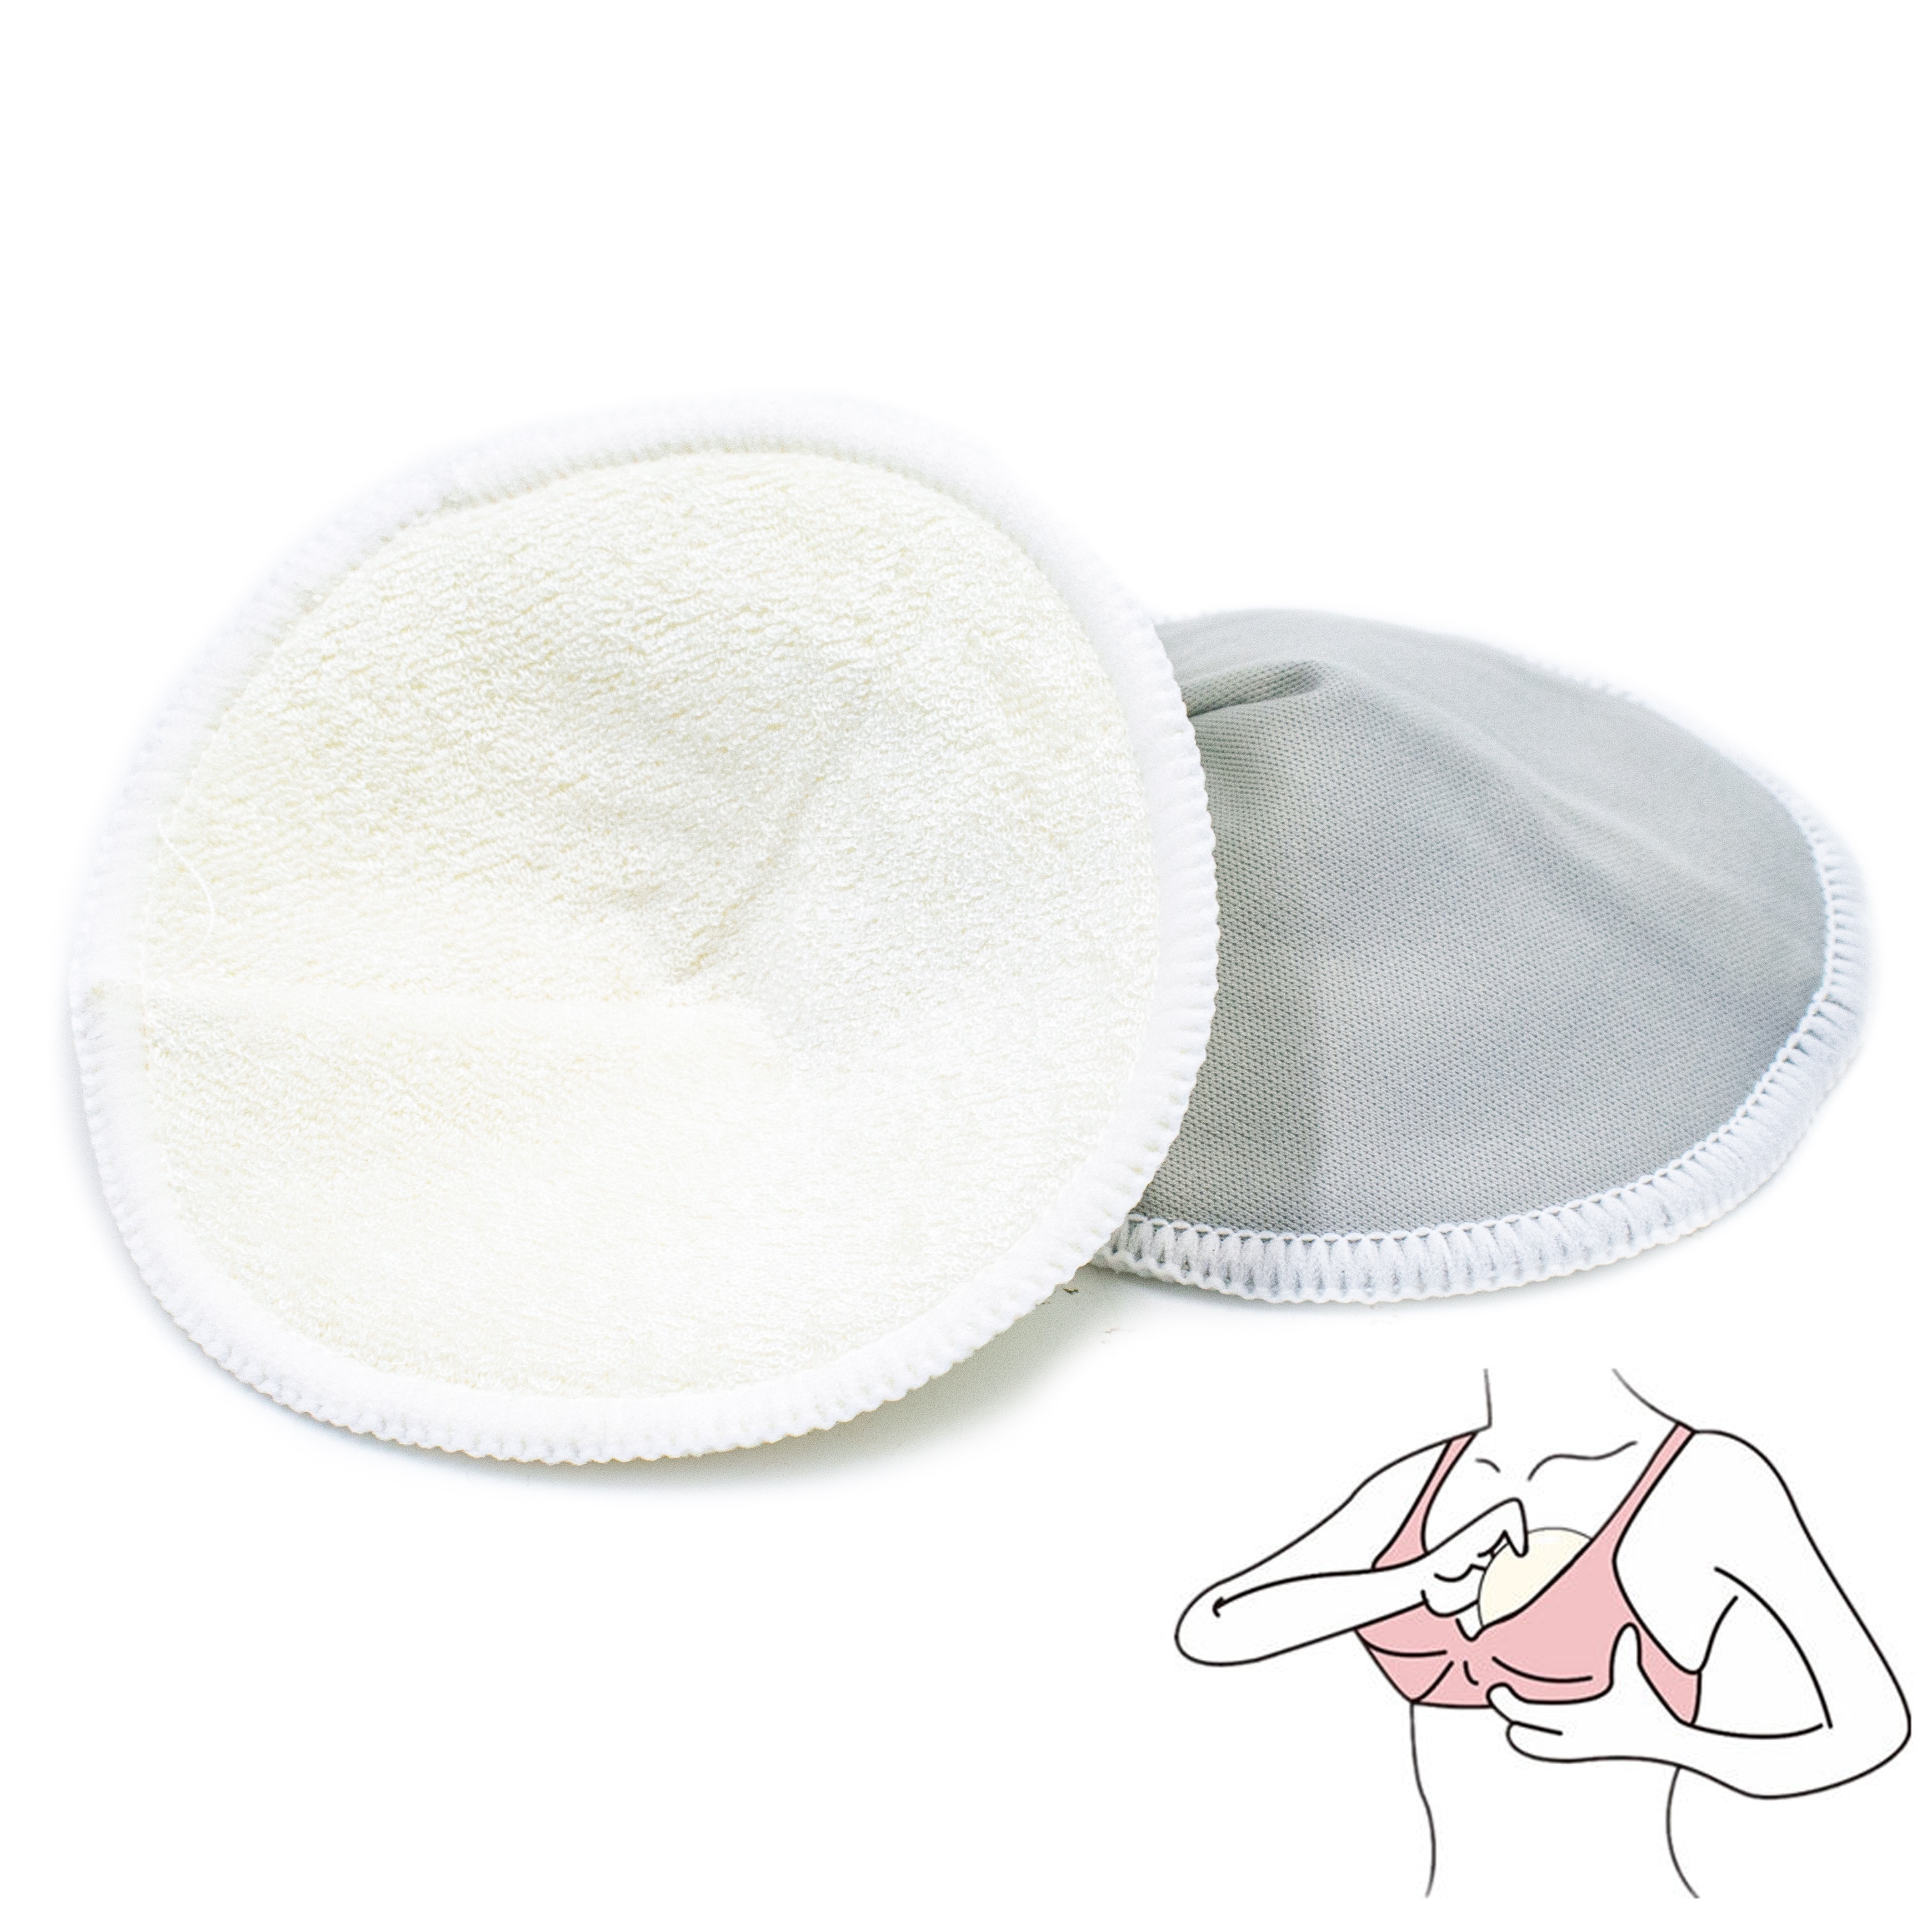 Almohadillas de Lactancia Lavables (4 Unidades) – Mr. Baby